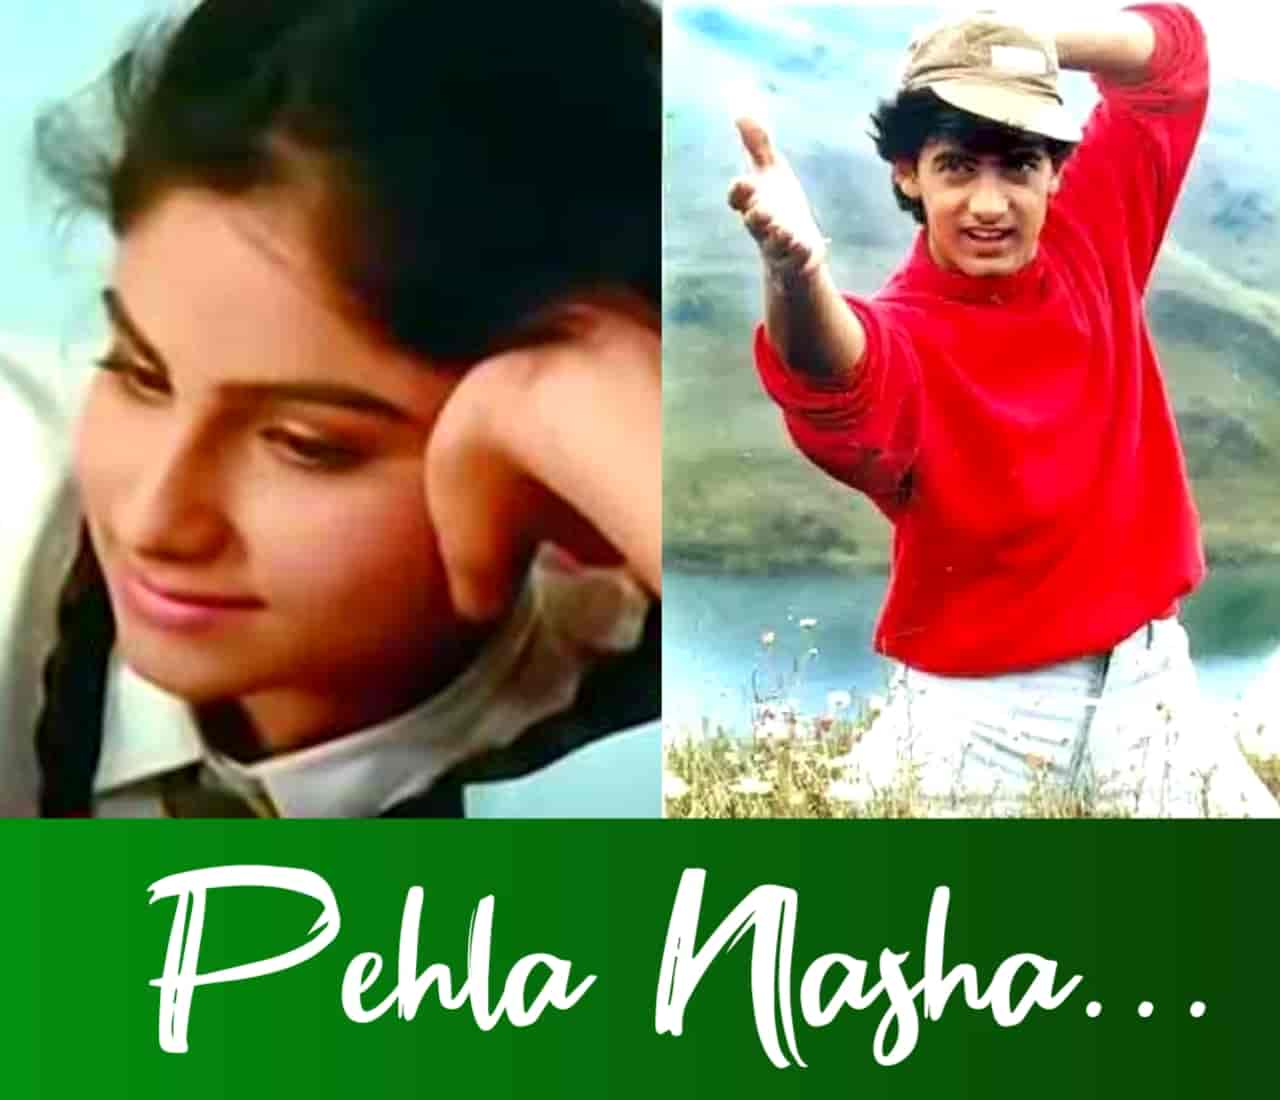 Pehla Nasha Hindi Love Song Lyrics, Sung By Udit Narayan and Sadhana Sargam.